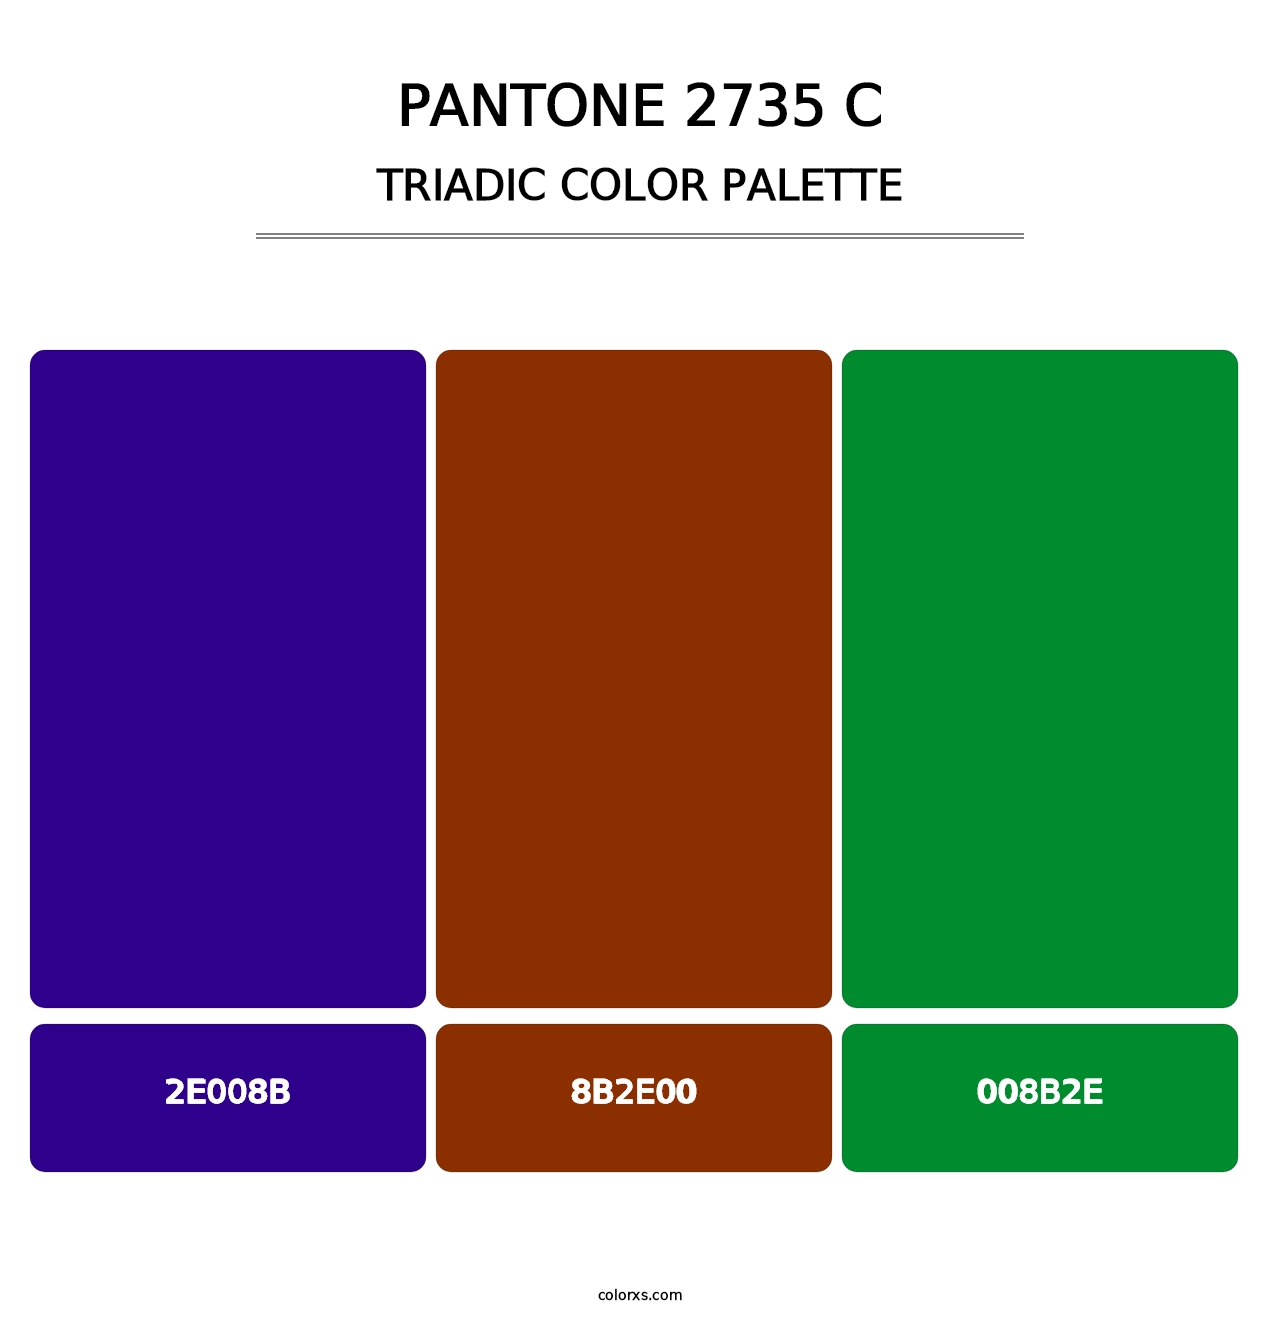 PANTONE 2735 C - Triadic Color Palette